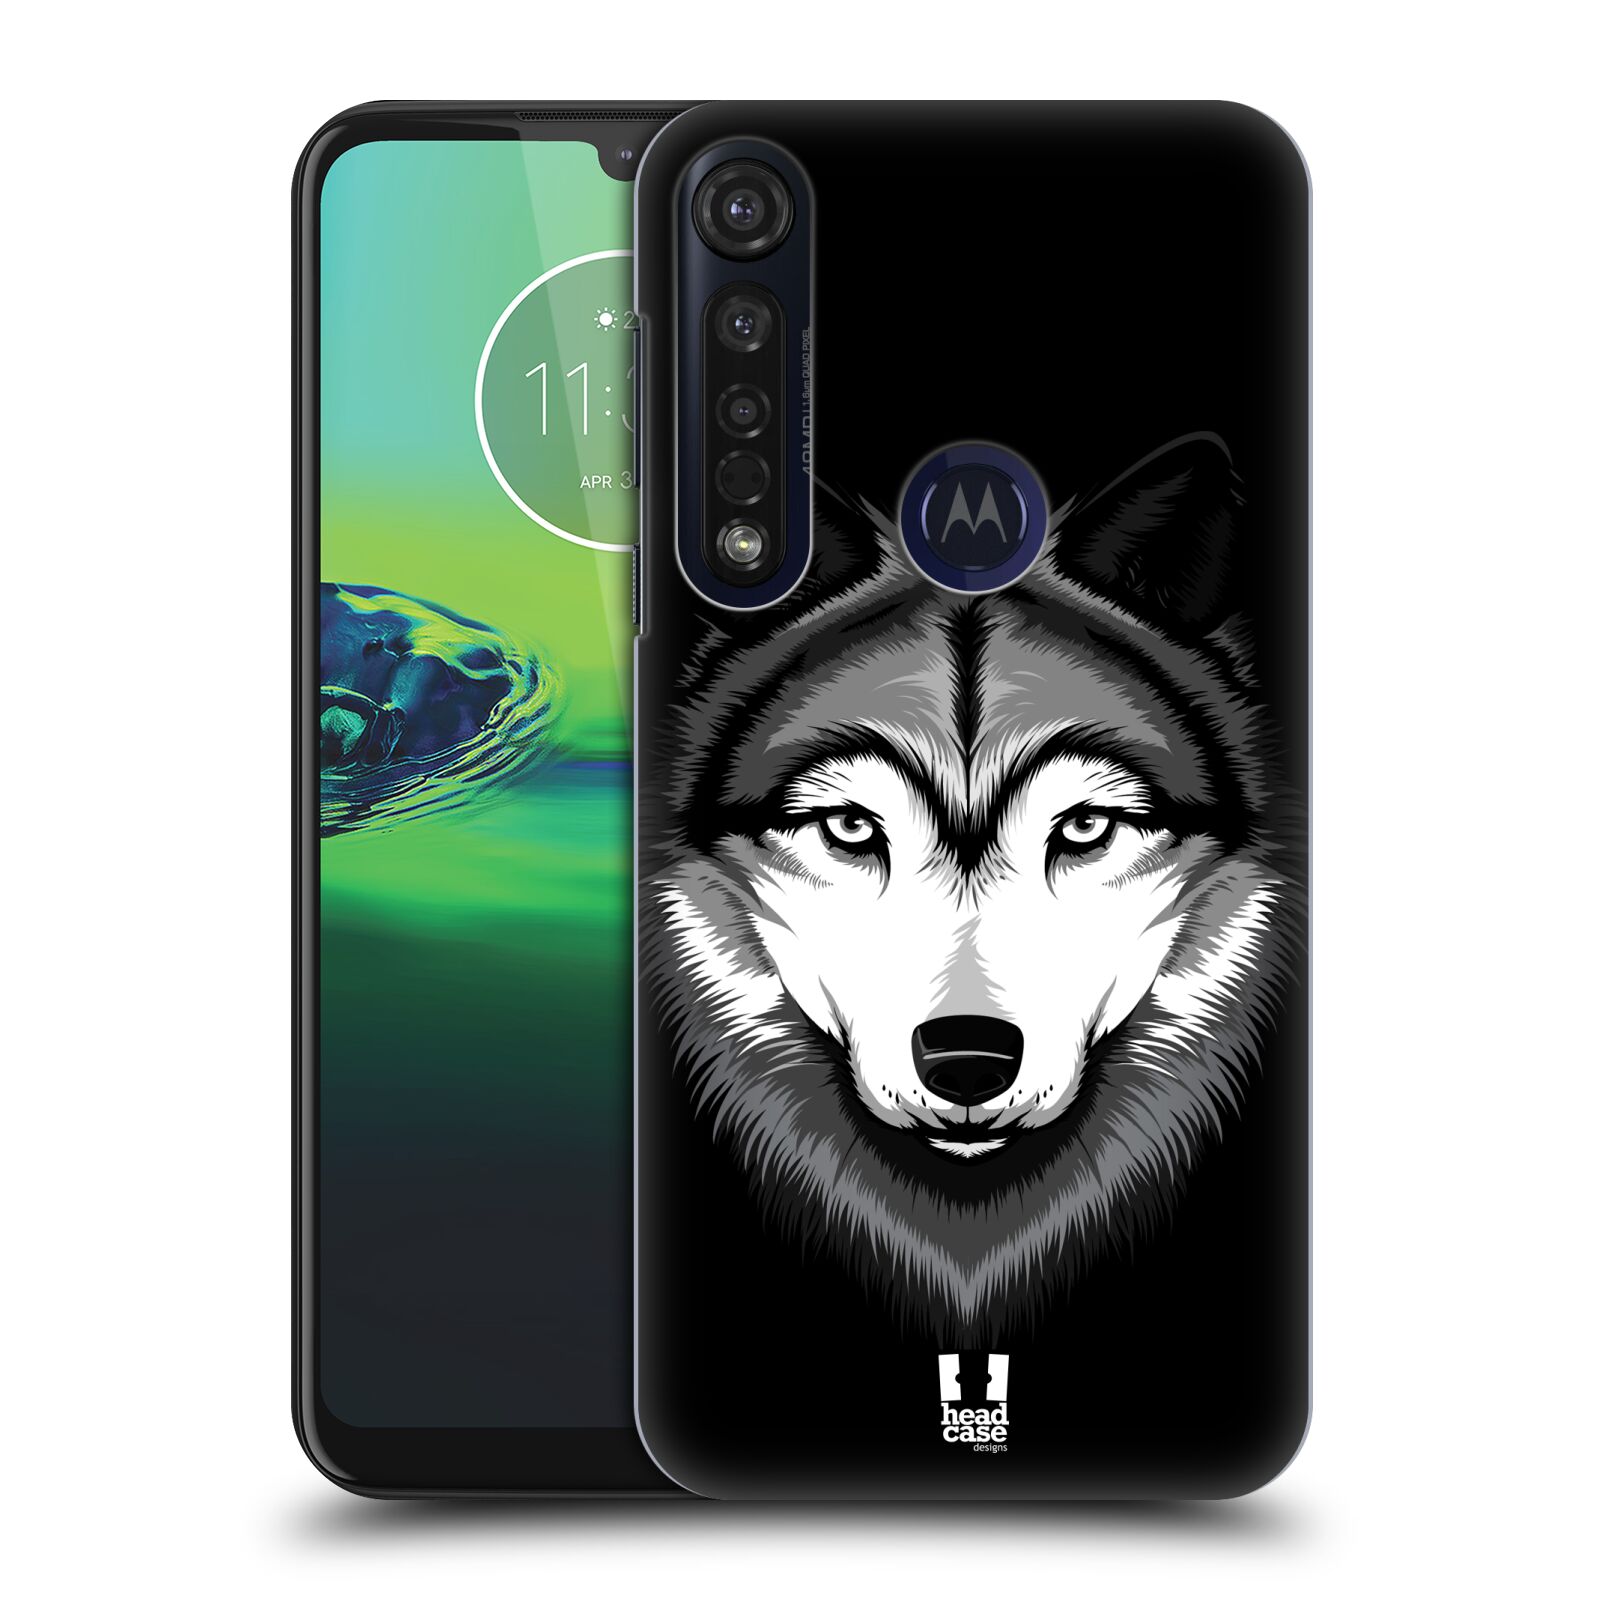 Pouzdro na mobil Motorola Moto G8 PLUS - HEAD CASE - vzor Zvíře kreslená tvář 2 vlk